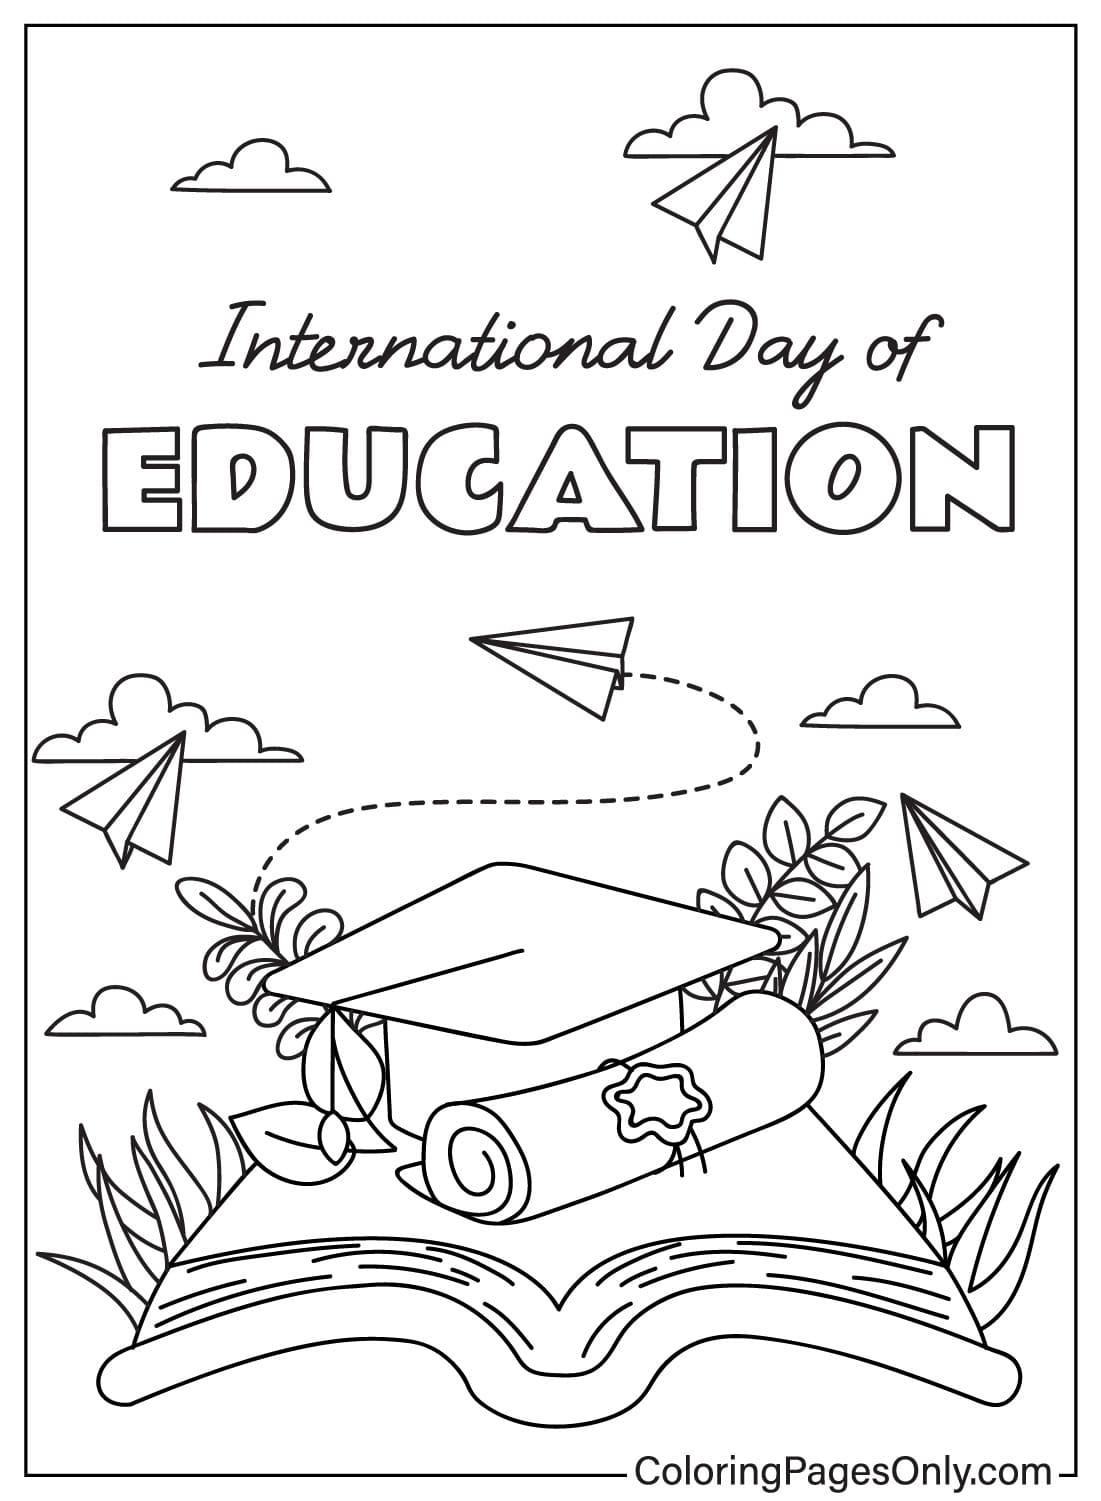 اطبع صفحة تلوين اليوم العالمي للتعليم من اليوم العالمي للتعليم